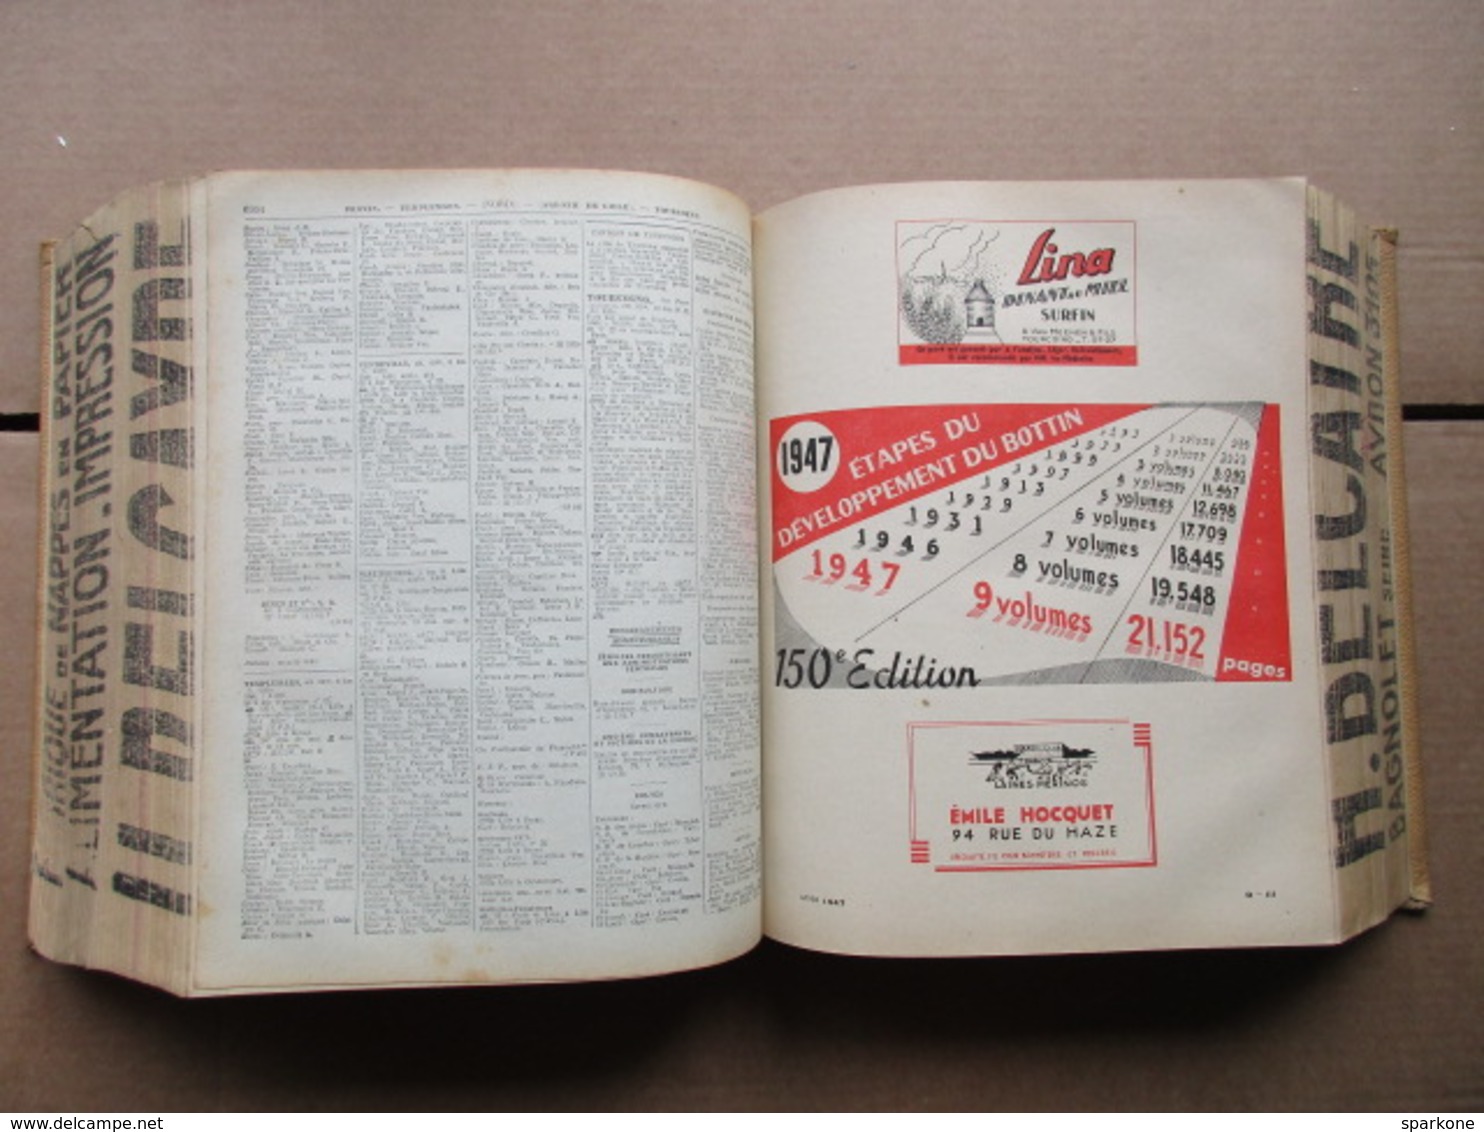 Annuaire du Commerce / Didot-Bottin / Tome III / Départements Lot-et-Garonne à Haut-Rhin de 1947